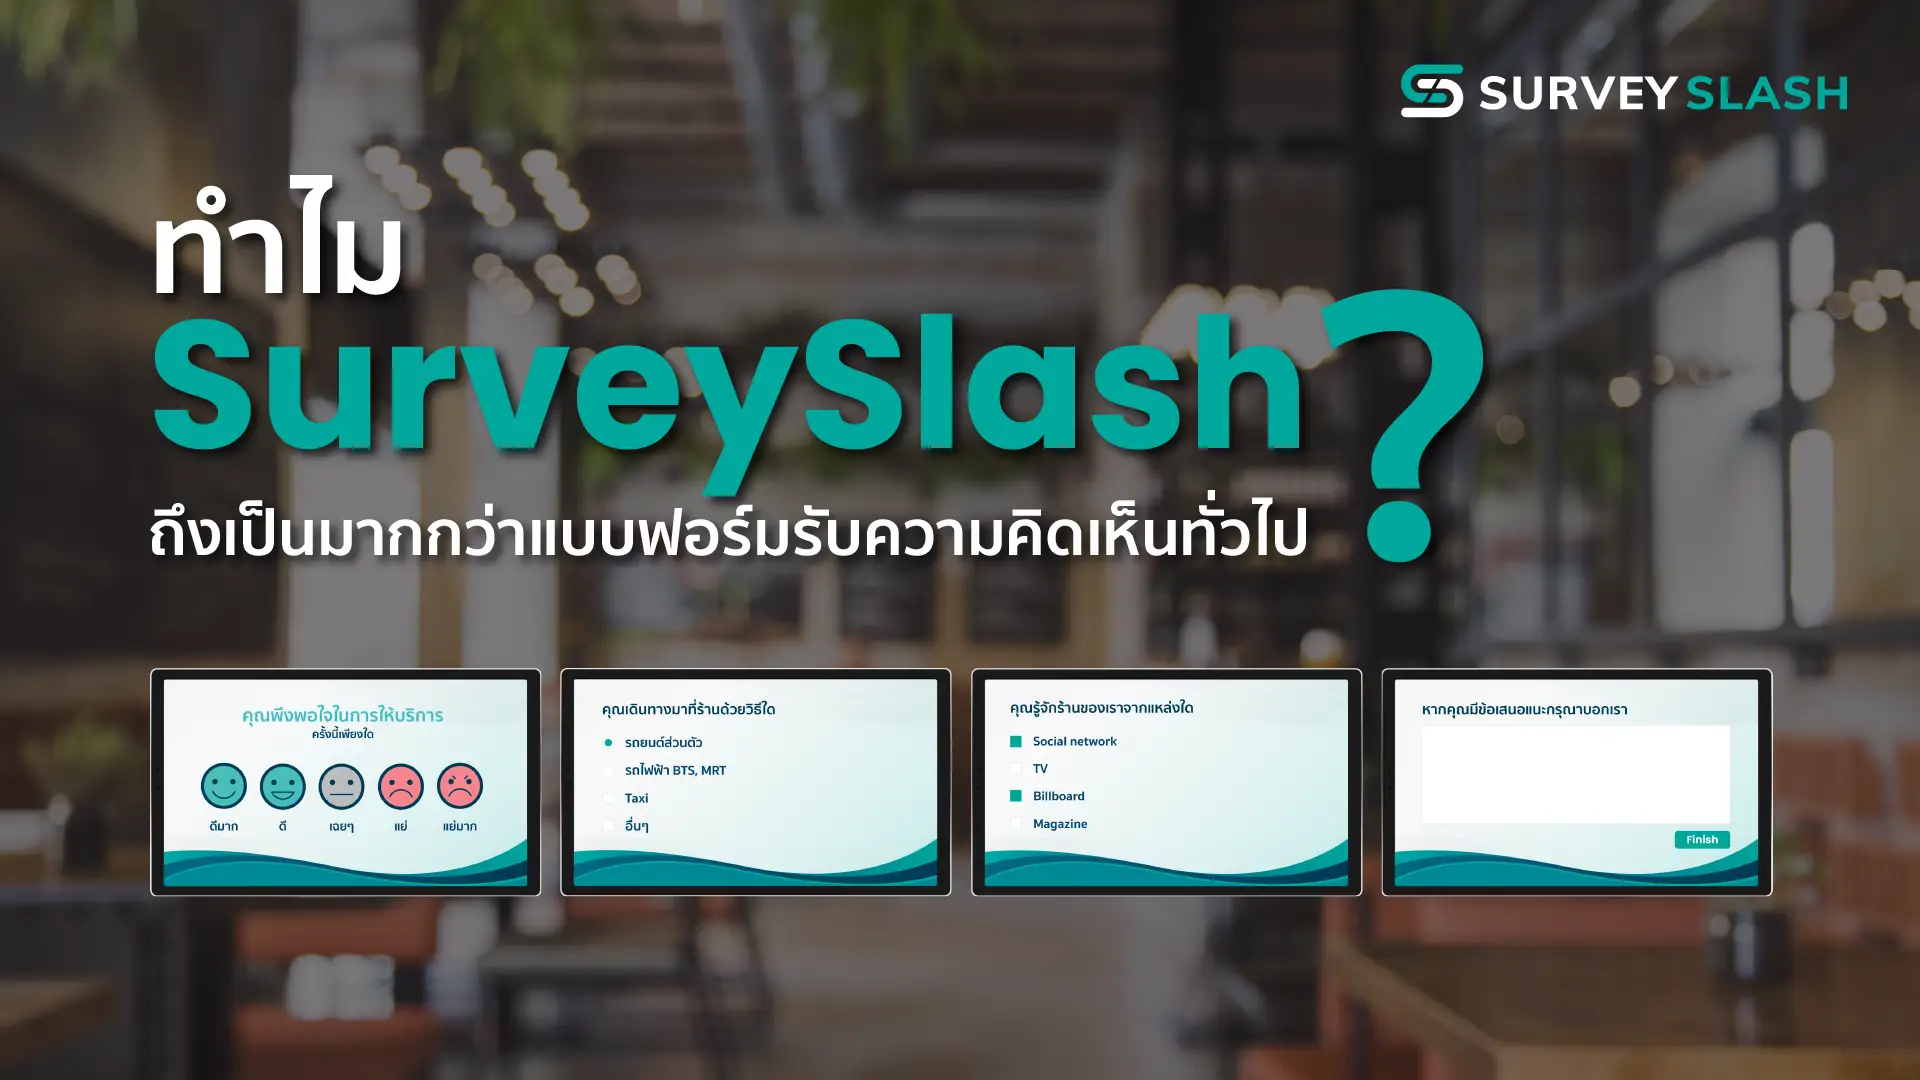 ทำไม Surveyslash ถึงเป็นมากกว่าแบบฟอร์มรับความคิดเห็นทั่วไป ?